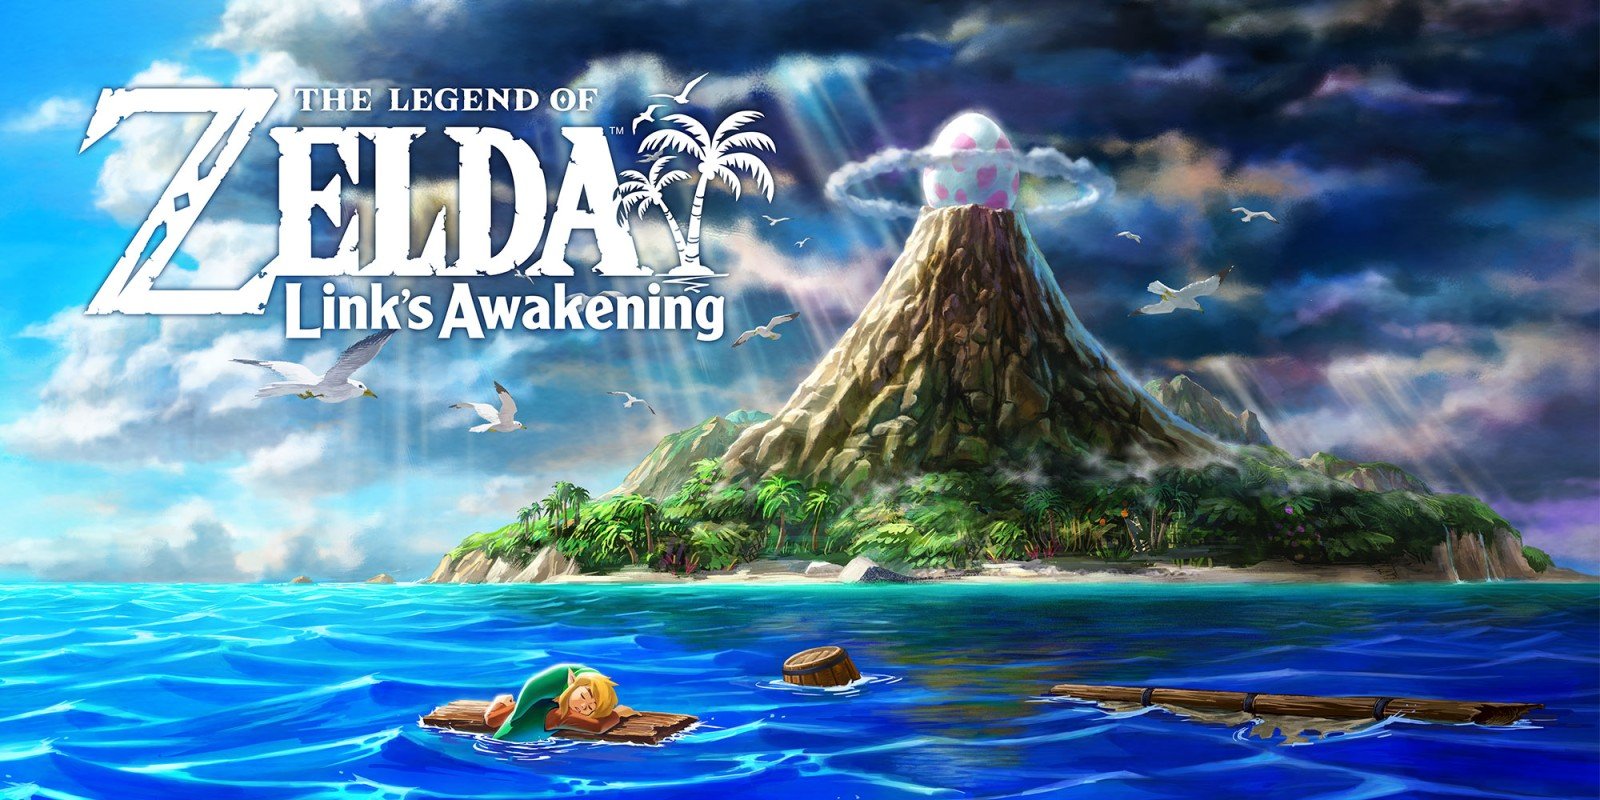 The Legend of Zelda: Link's Awakening Review